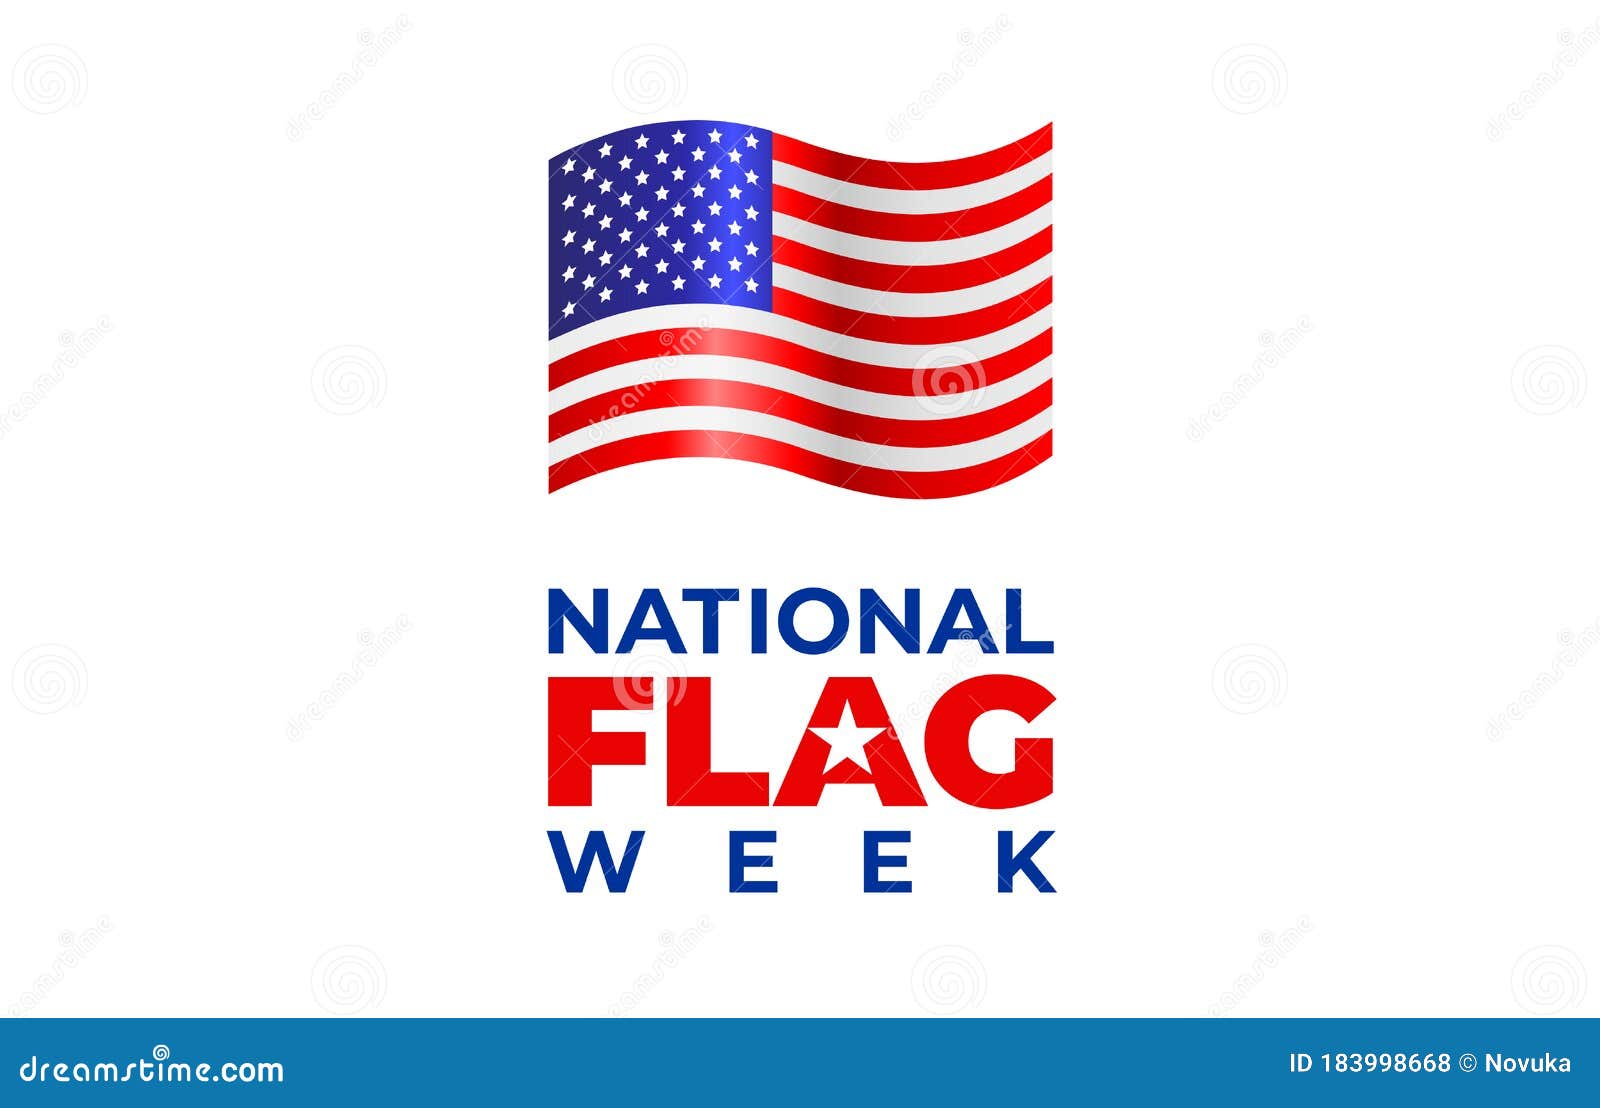 NATIONAL FLAG WEEK. Vector Banner, Poster, Illustration, Image for